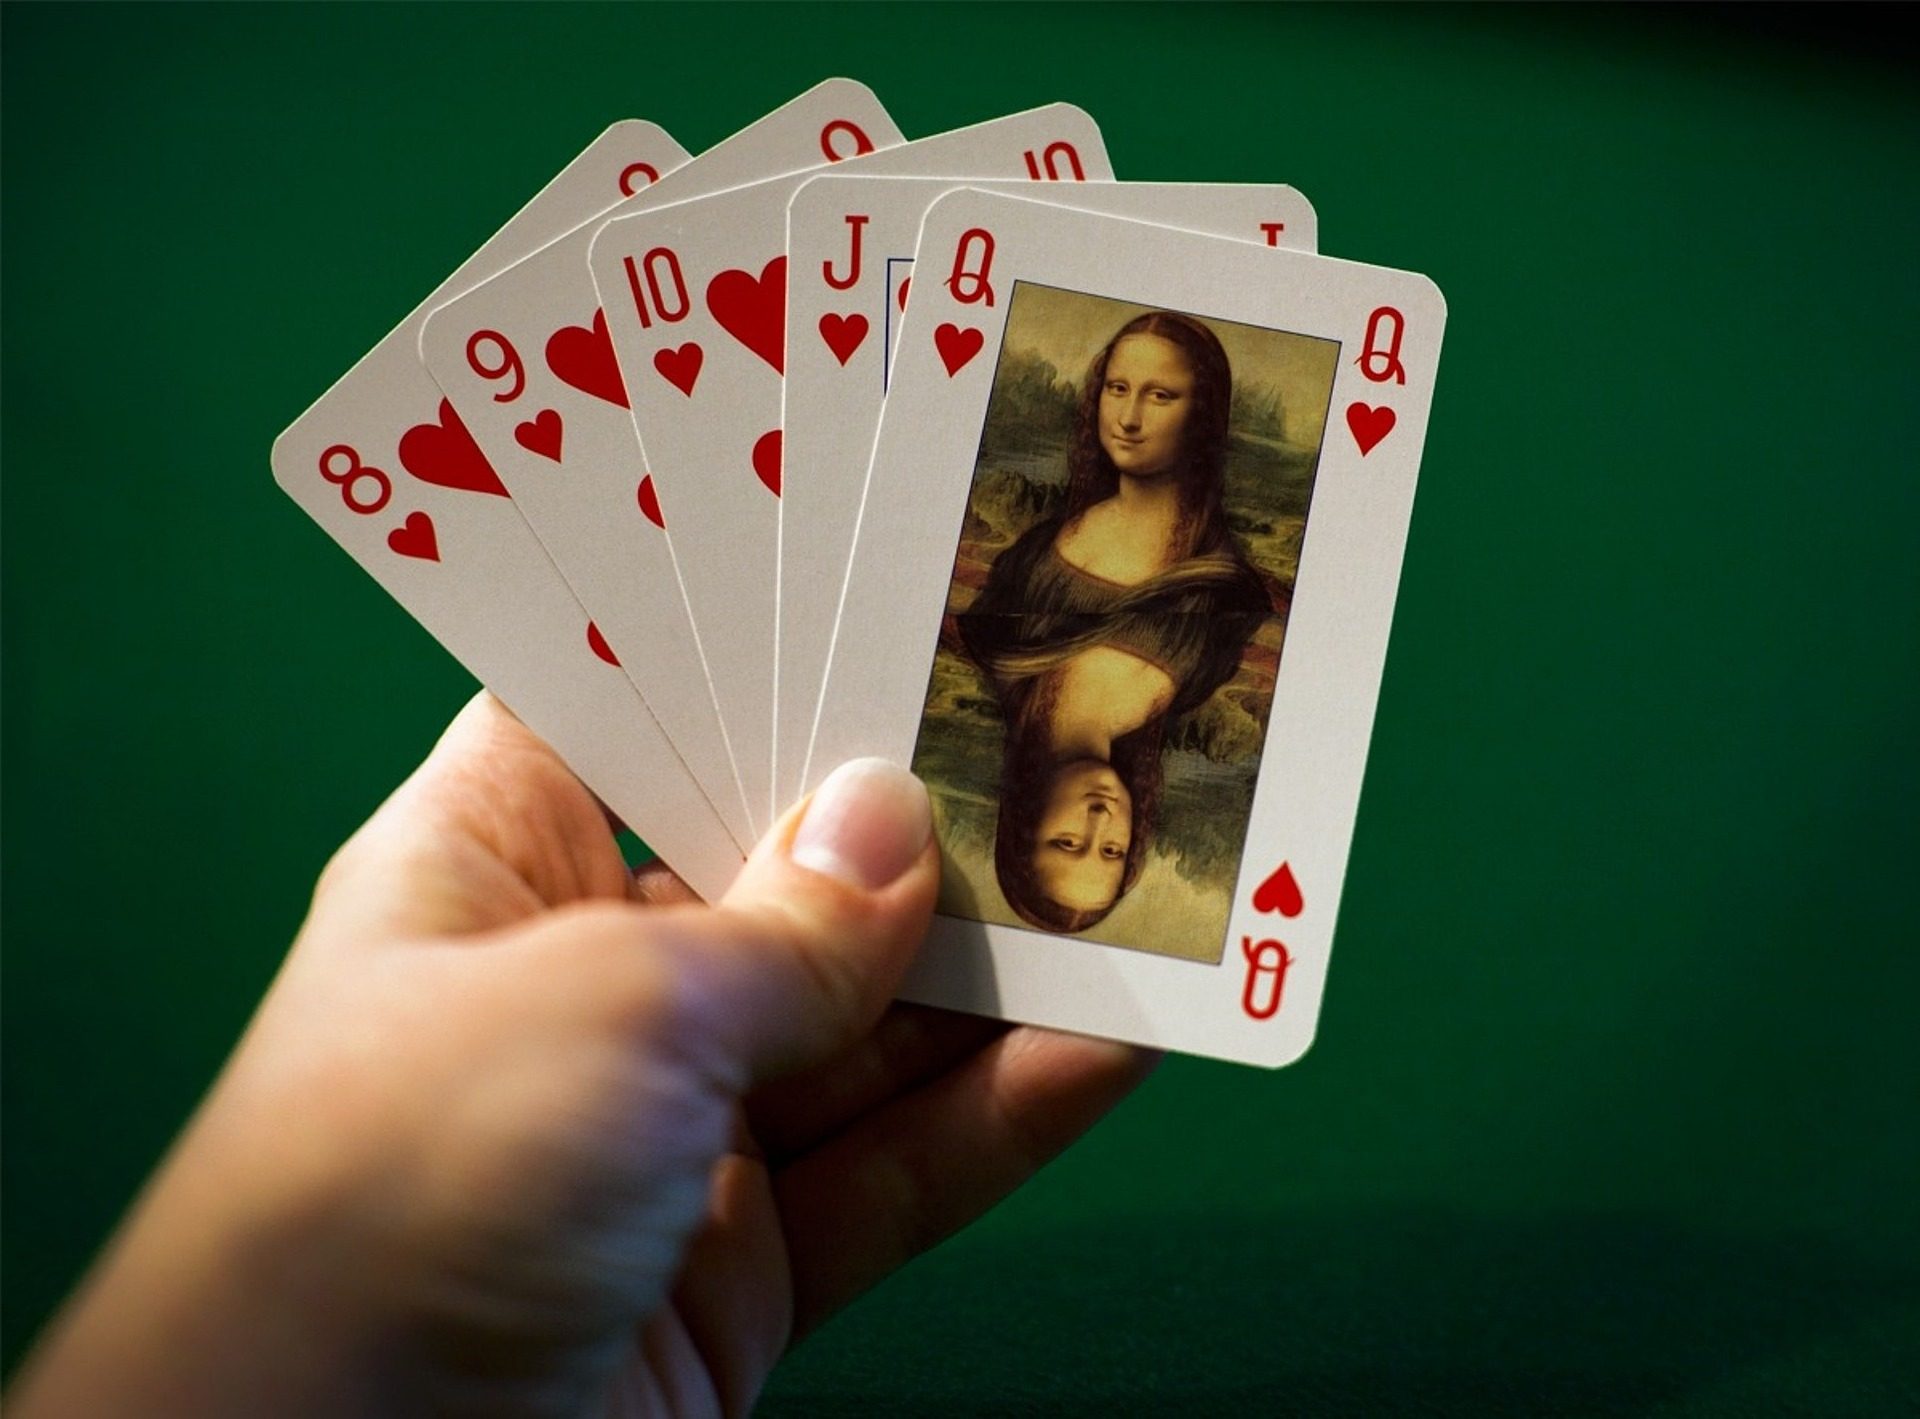 Eine Hand hält 5 Spielkarten mit Herz8, Herz9, Herz10, HerzJ, HerzQ. Auf der Herz Q befindet sich ein Bild von Mona Lisa.